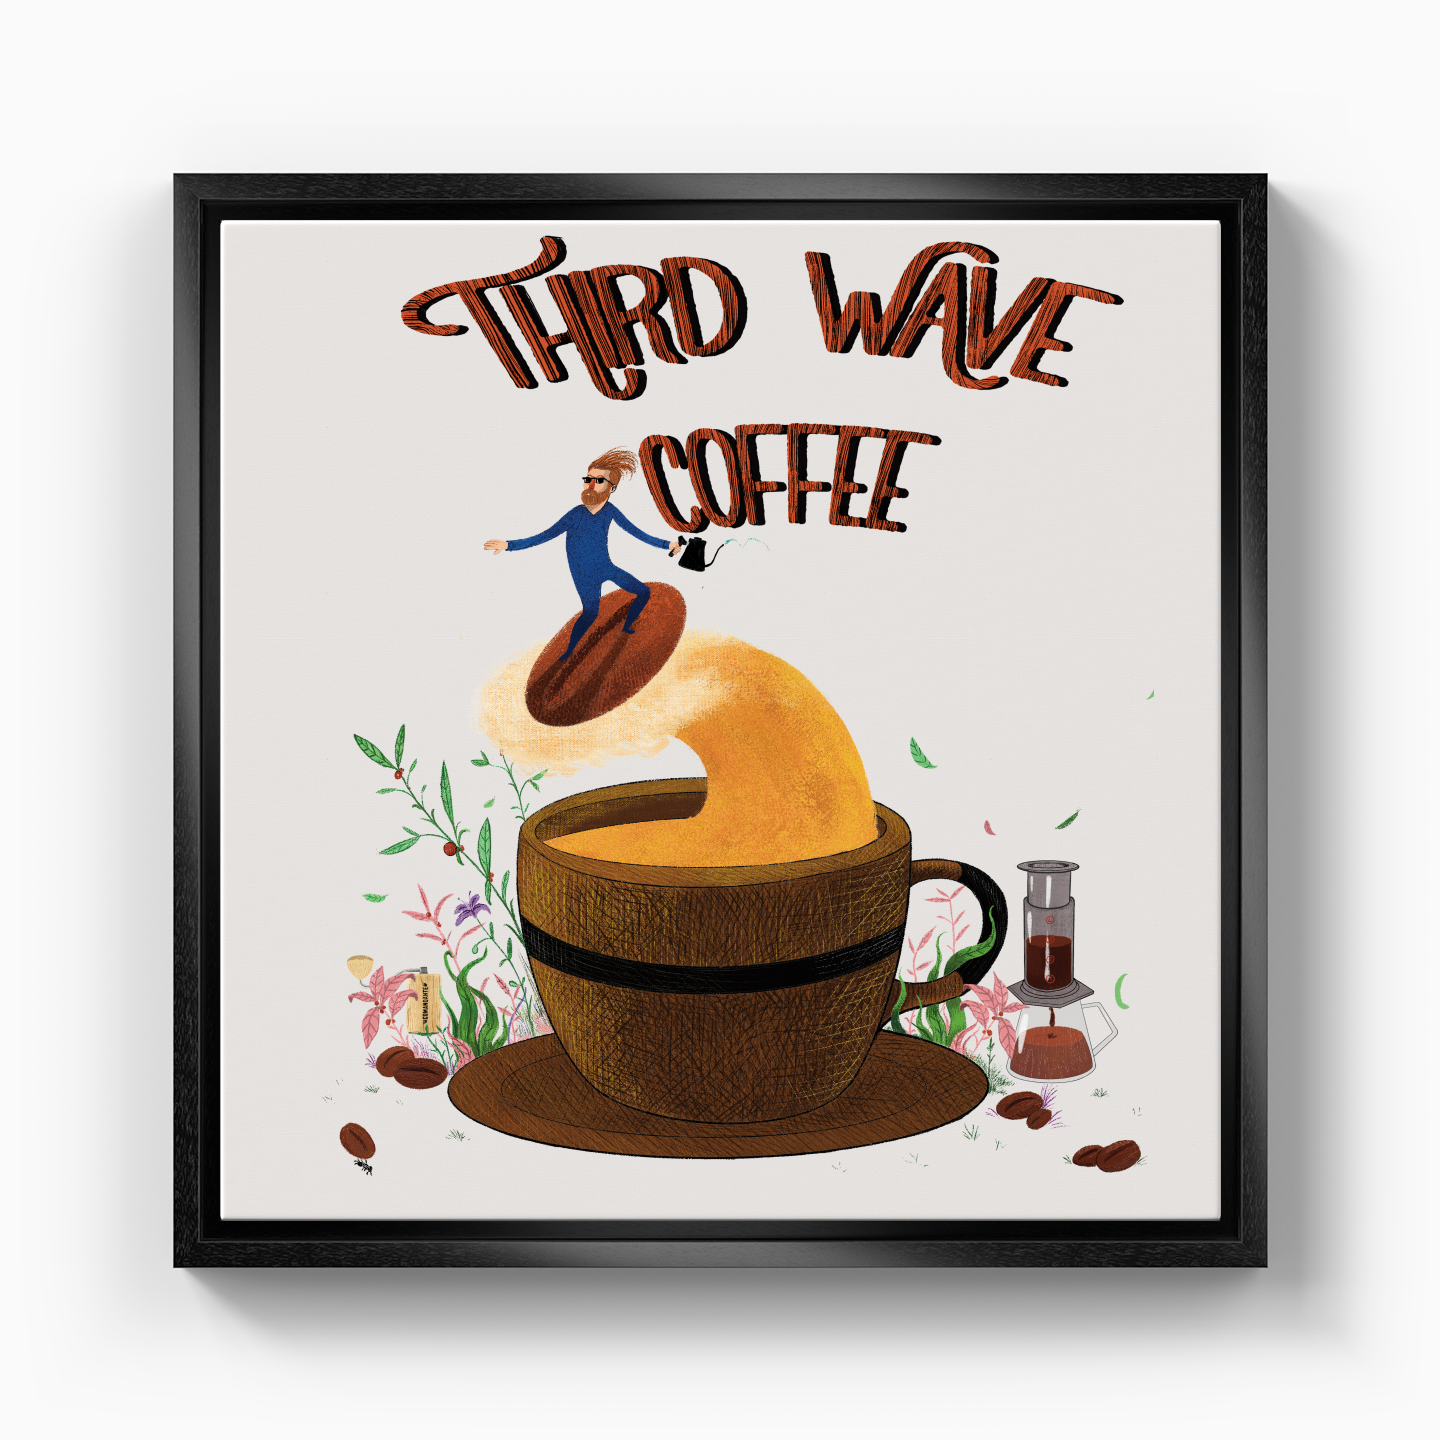 Third Wave Coffee - Kanvas Tablo